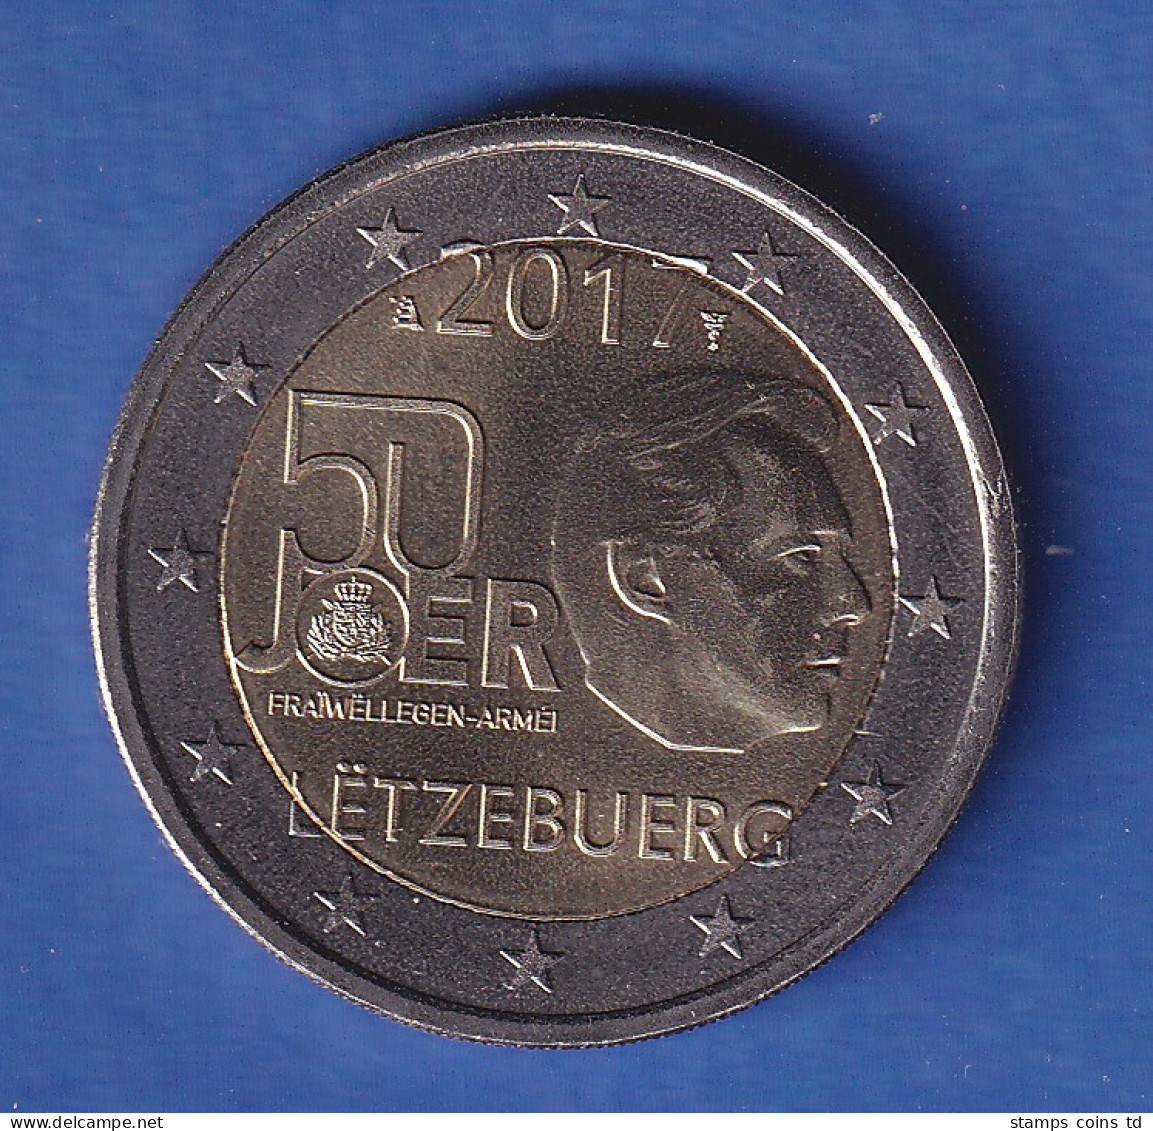 Luxemburg 2017 2-Euro-Sondermünze Wehrdienst Bankfr. Unzirk. - Luxemburg